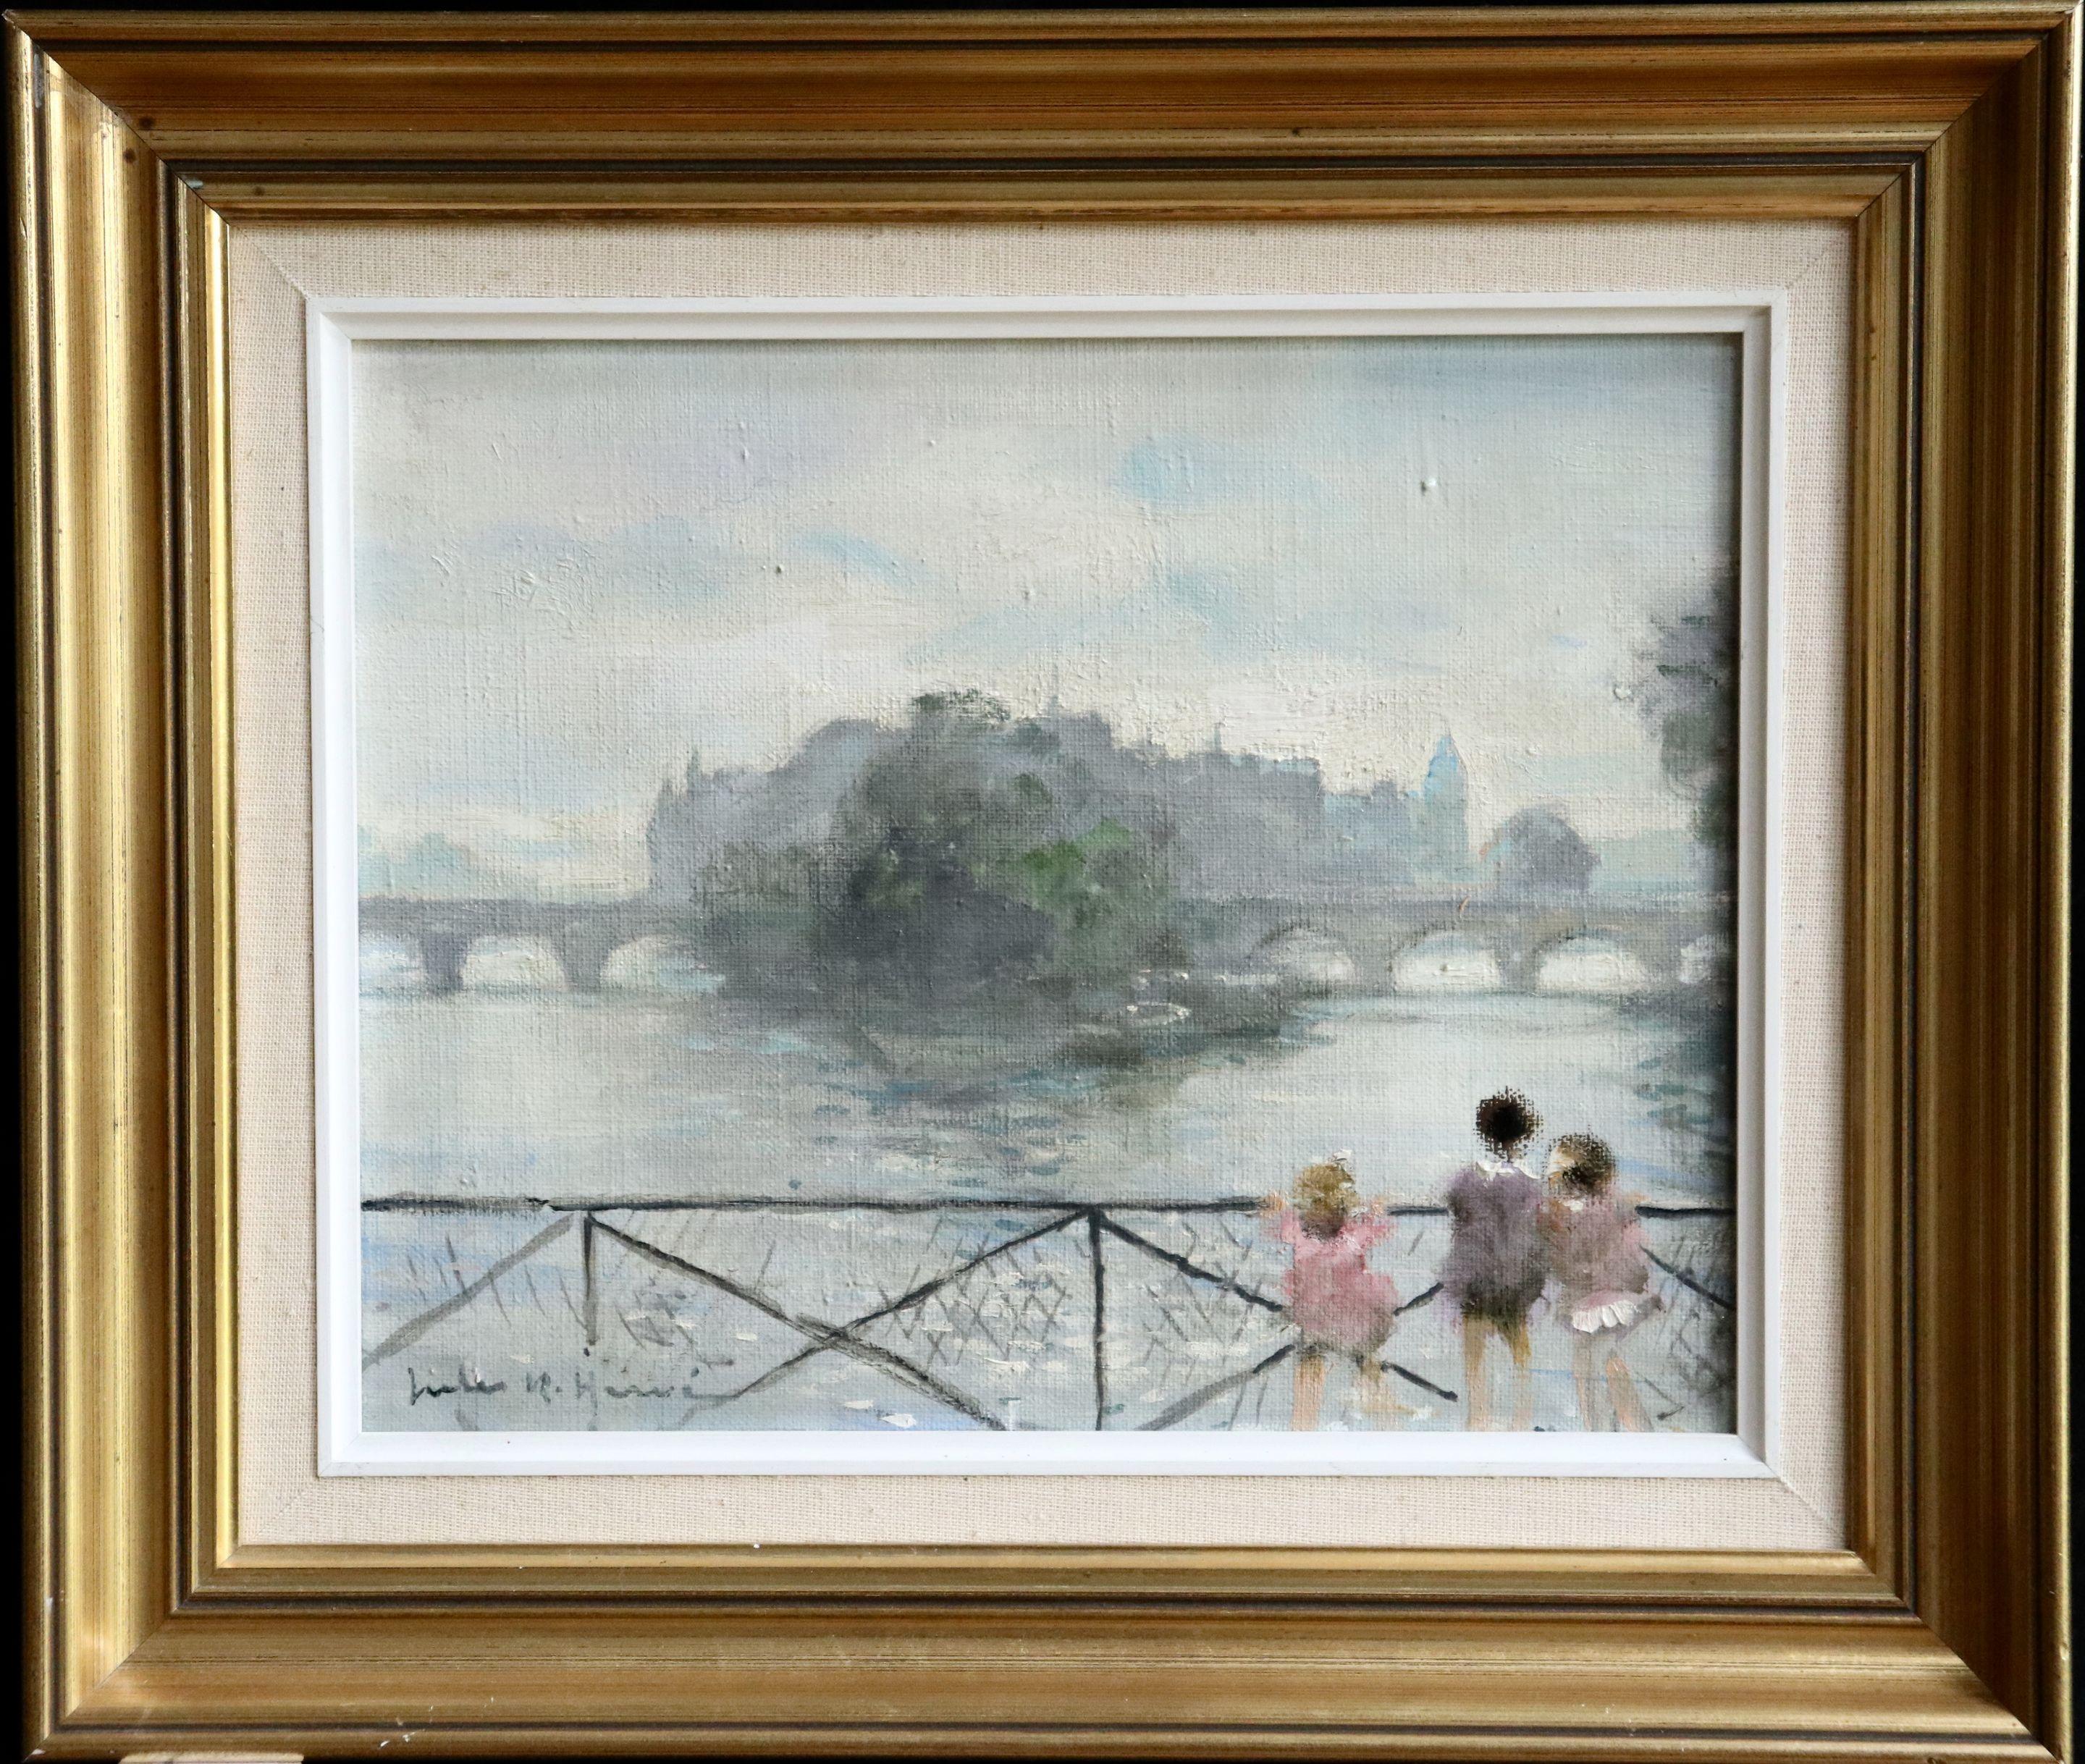 Enfants sur la Seine - 20th Century Oil, Children by River Landscape by J Herve - Painting by Jules René Hervé